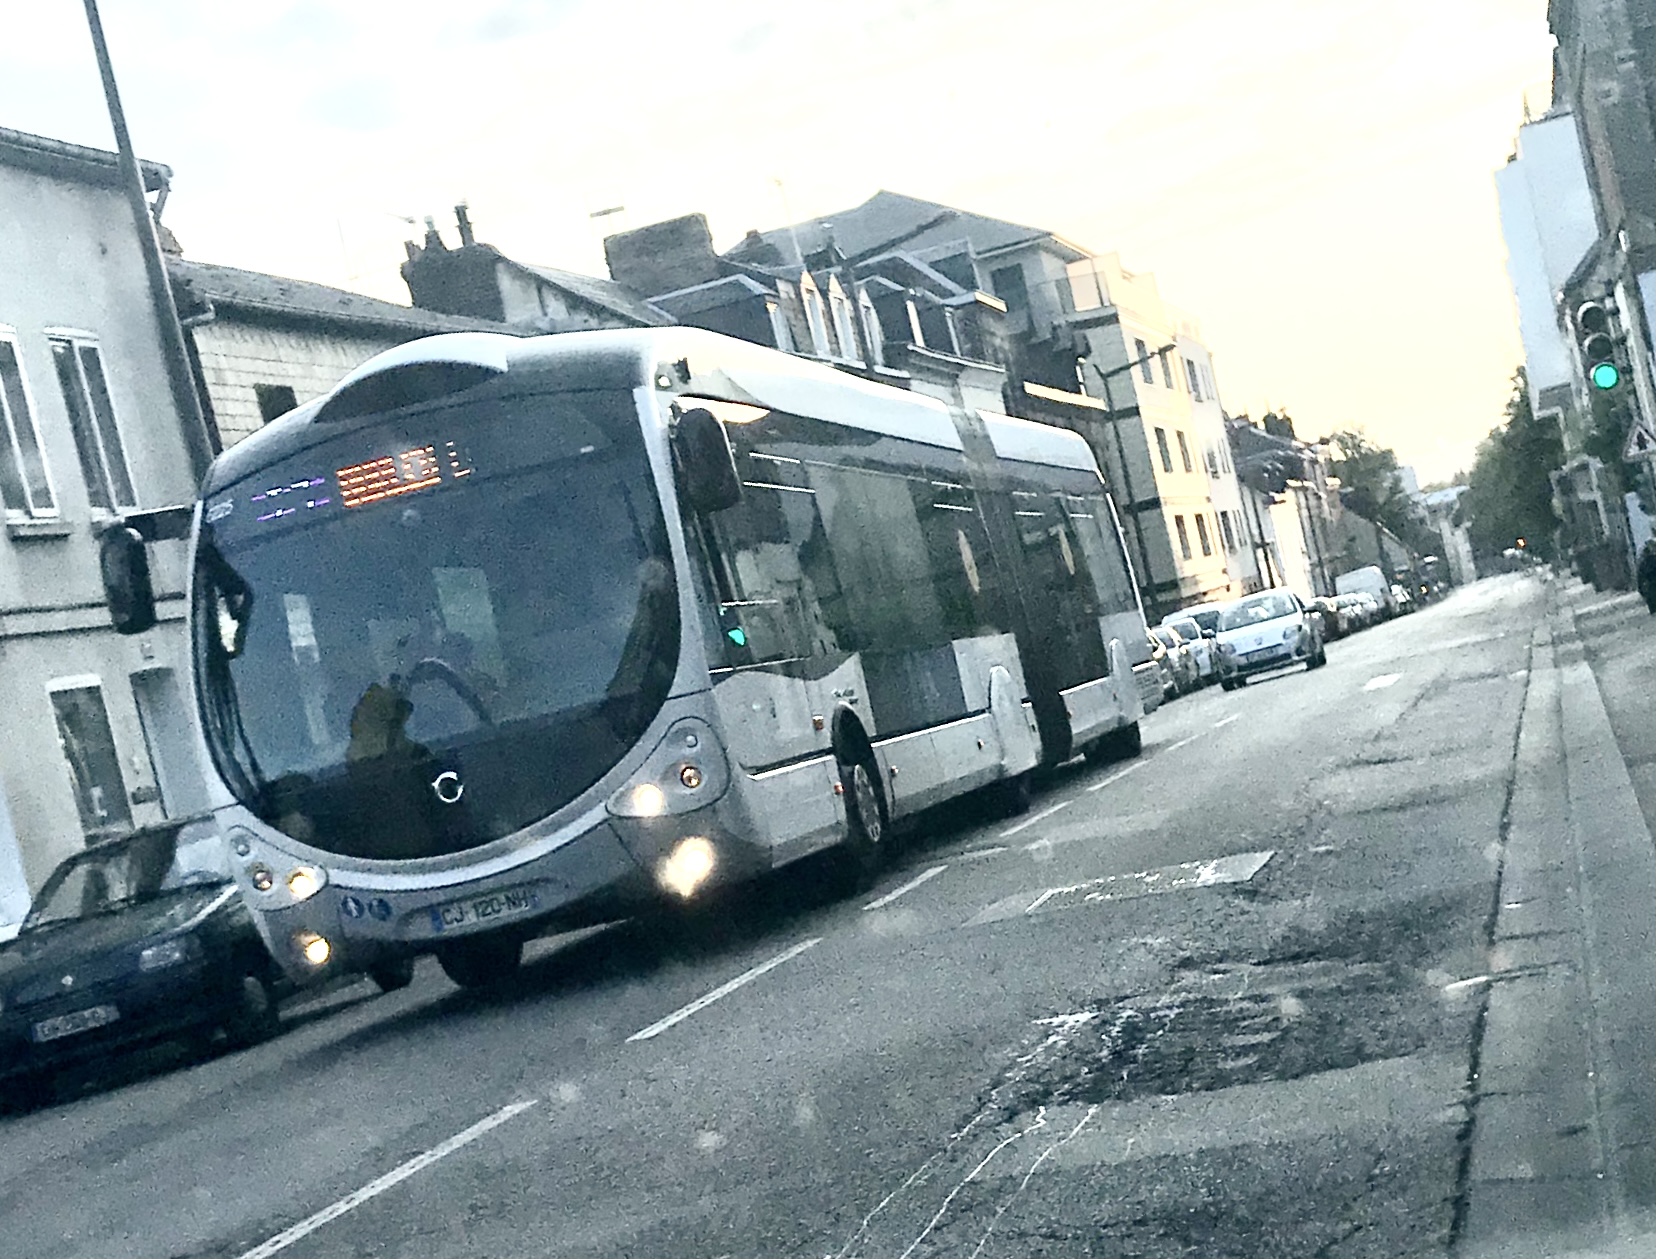 Les transports en commun sont gratuits sur le réseau Astuce toute la journée de ce jeudi dans l'agglomération de Rouen - © infoNormandie